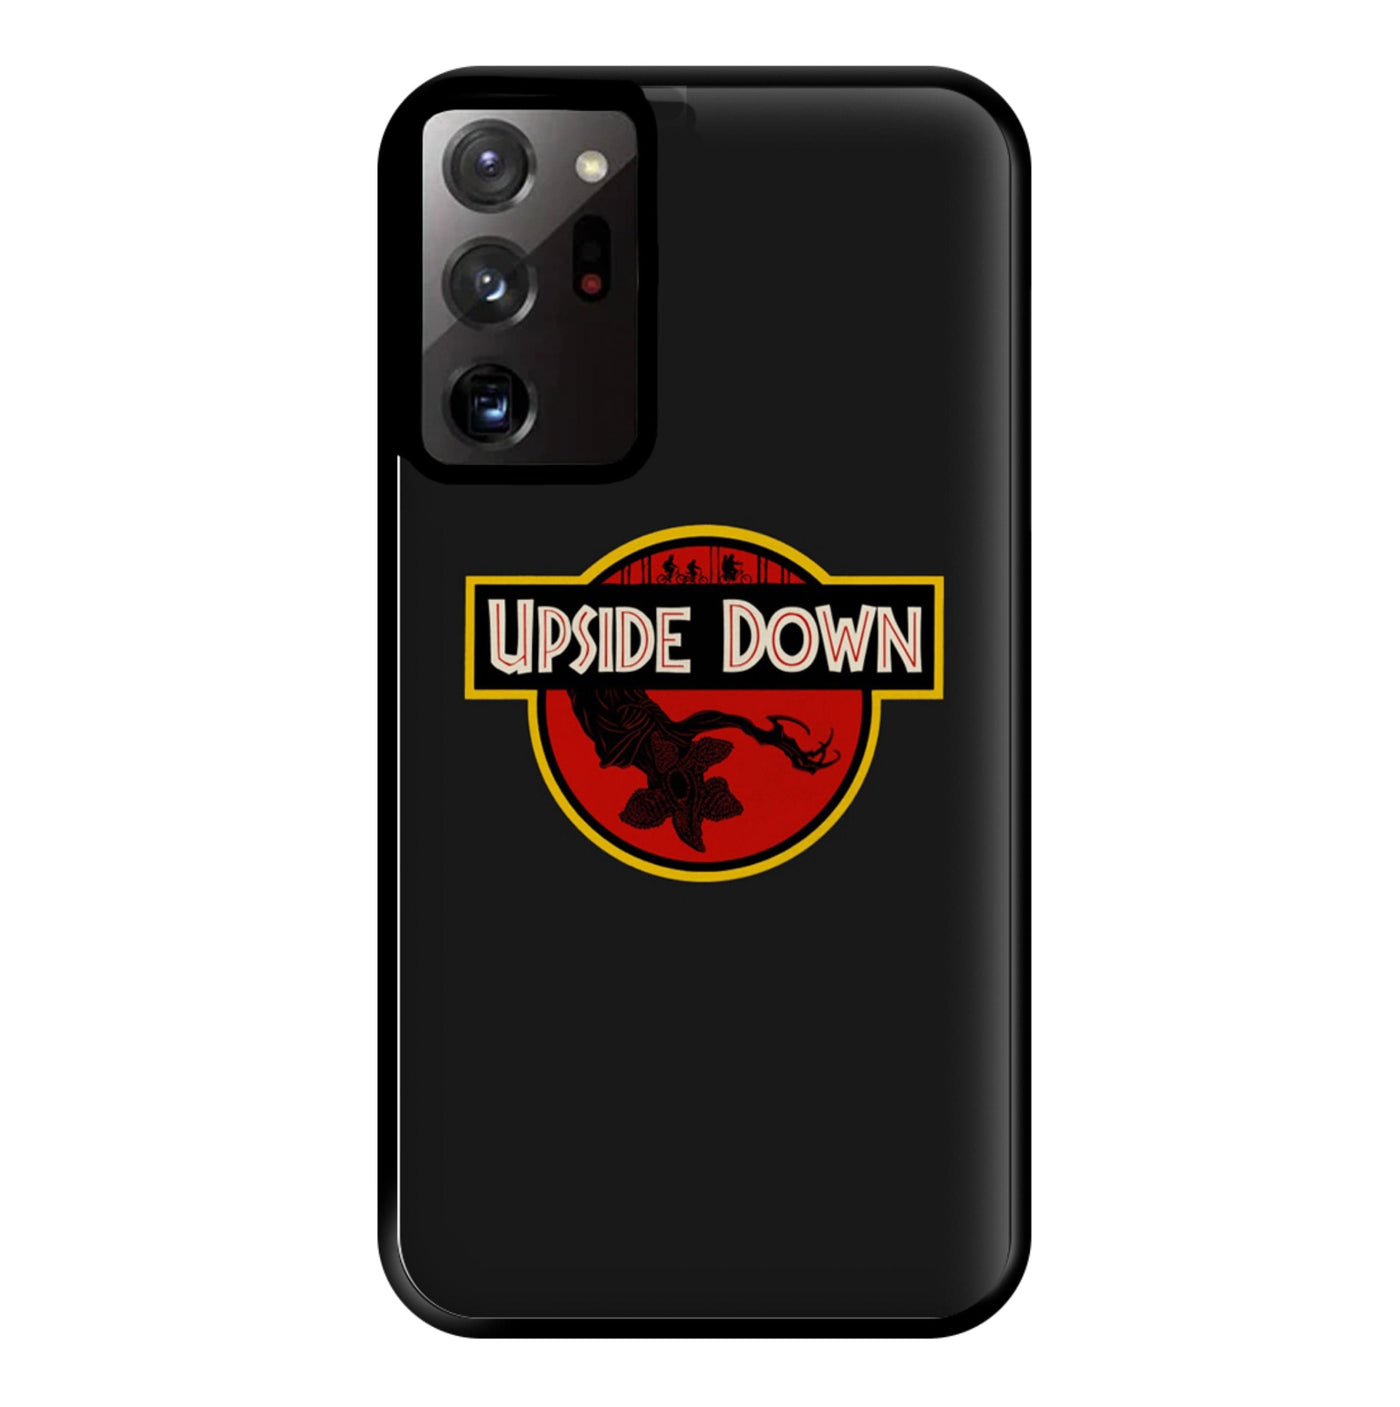 Upside Down - Jurassic Inspired Stranger Things Phone Case